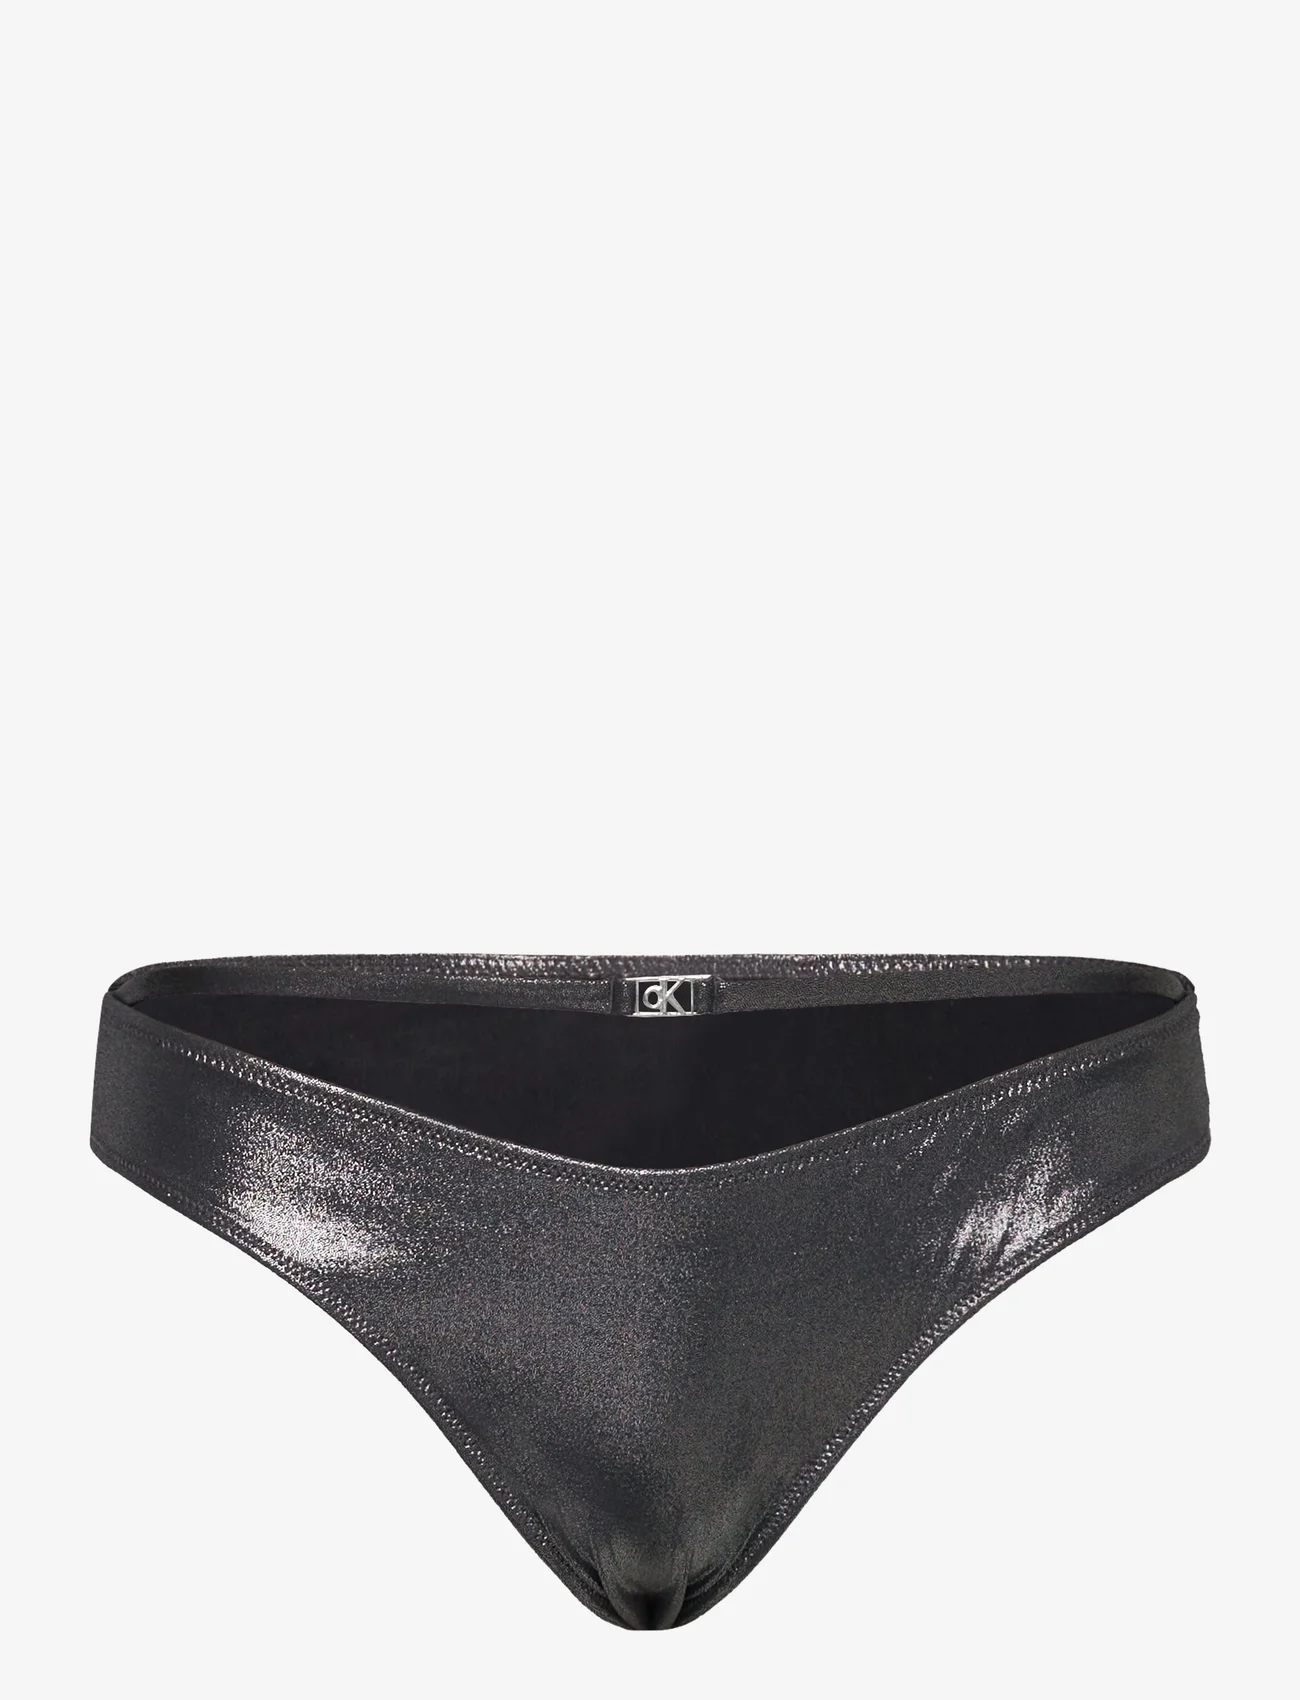 Calvin Klein - THONG - bikinibriefs - pvh black - 0